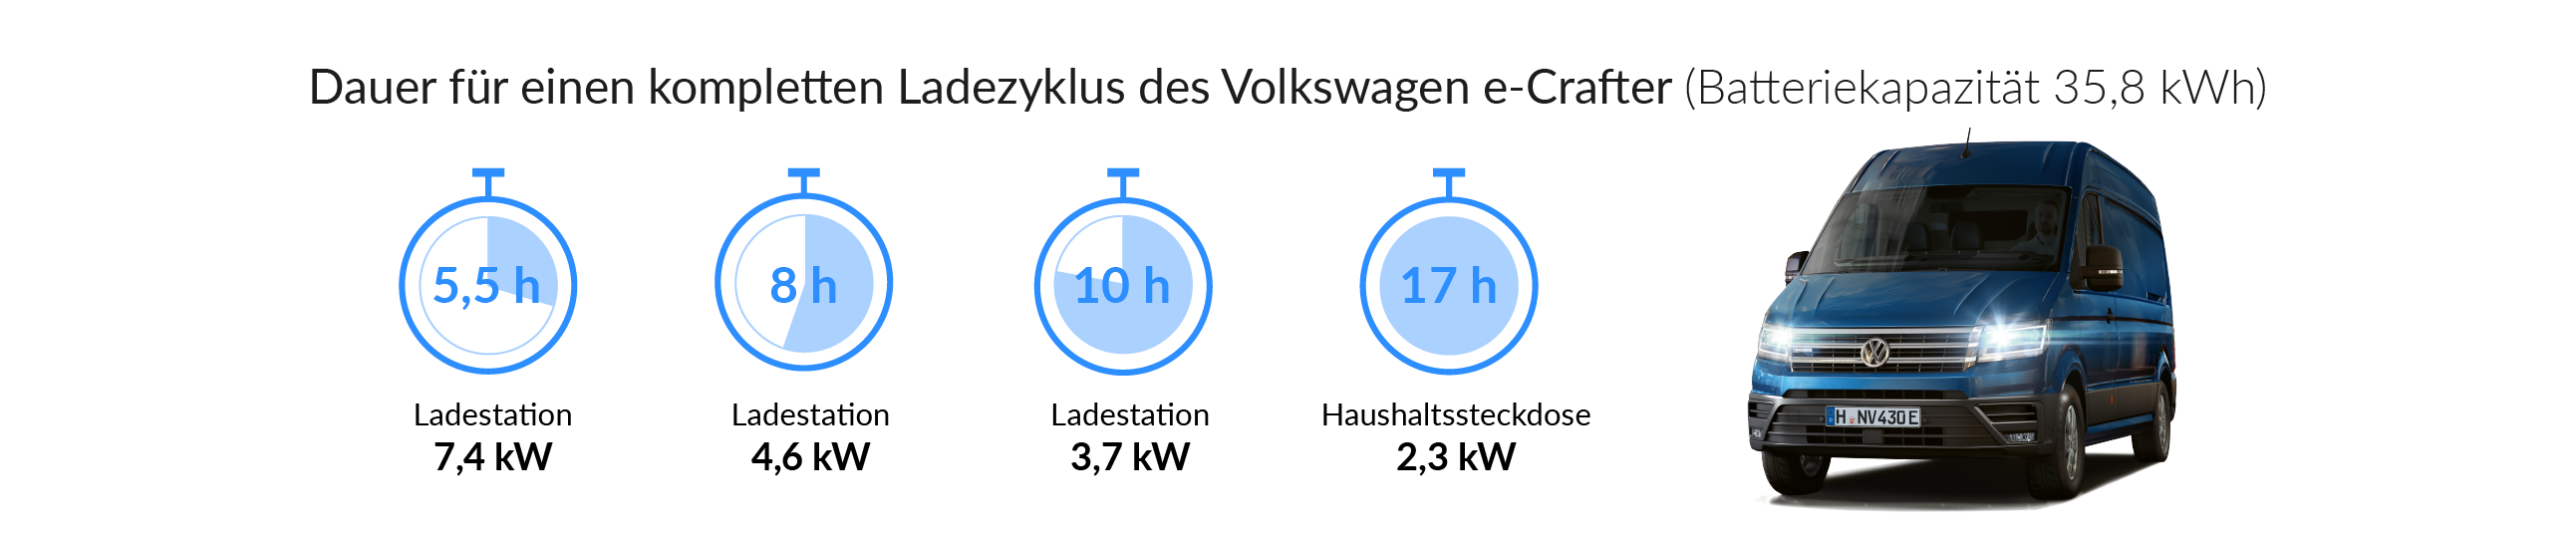 Ladezeiten des VW e-Crafters